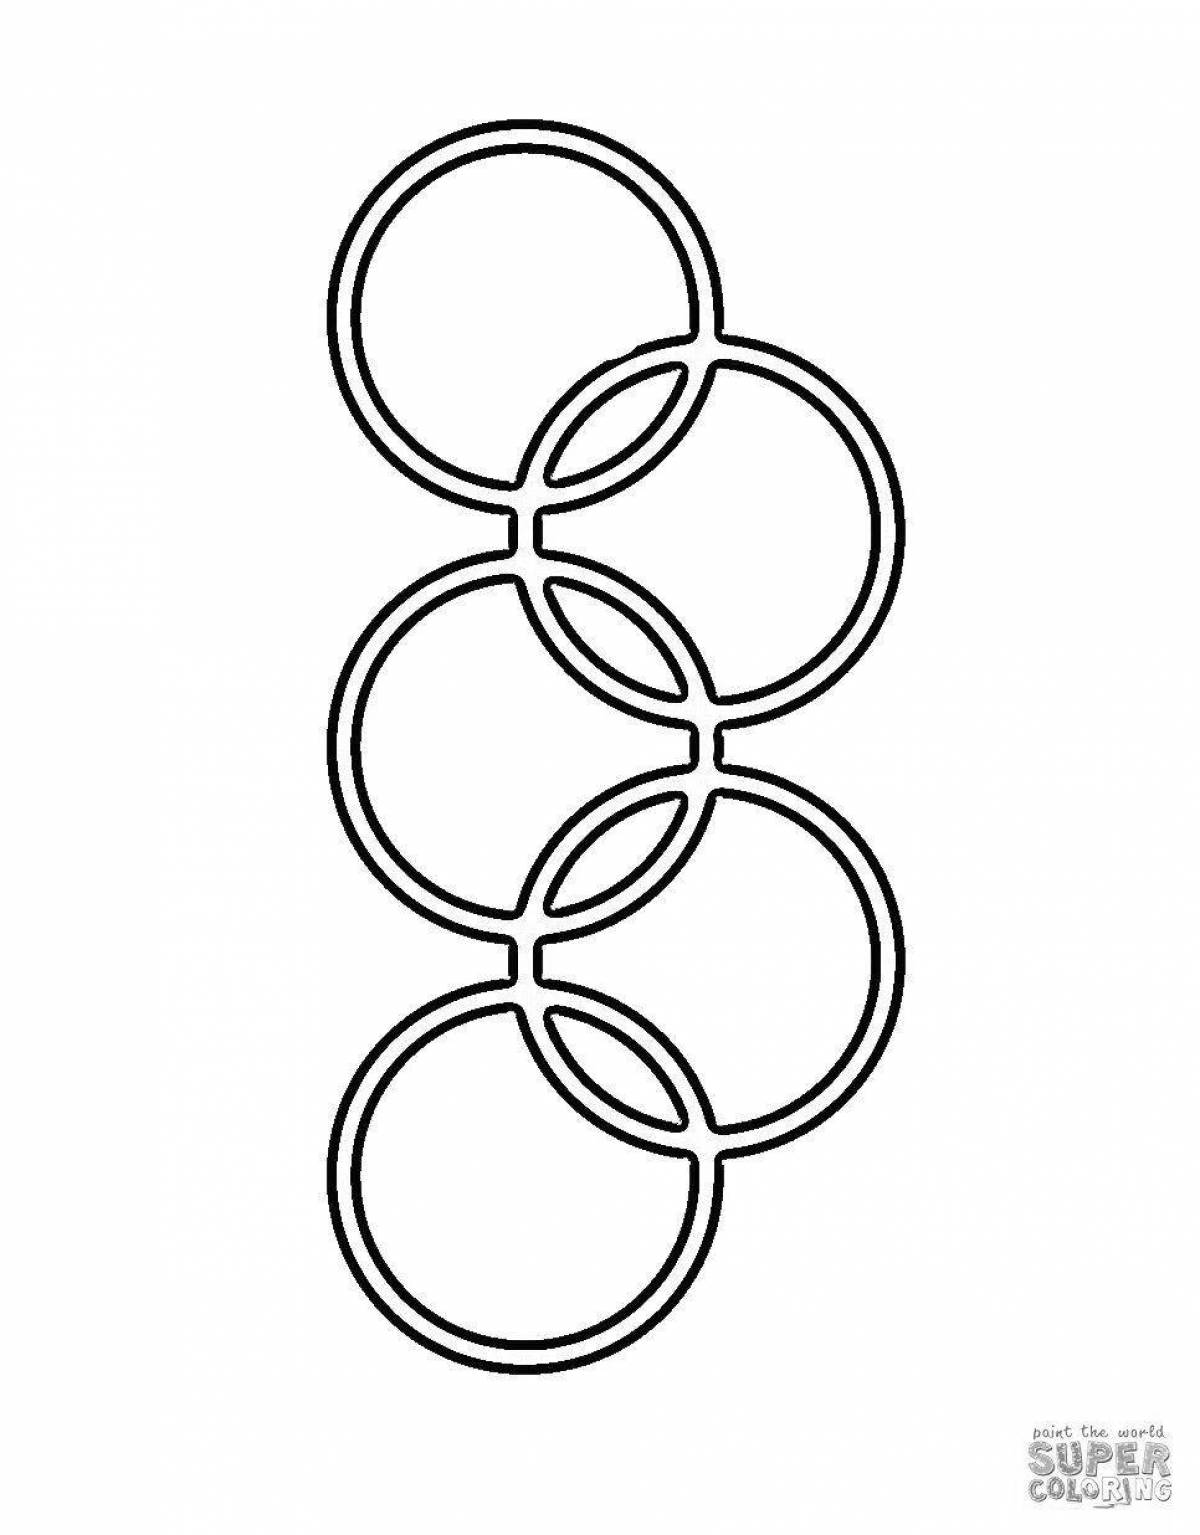 Конспект НОД по рисованию на тему «Олимпийские кольца»